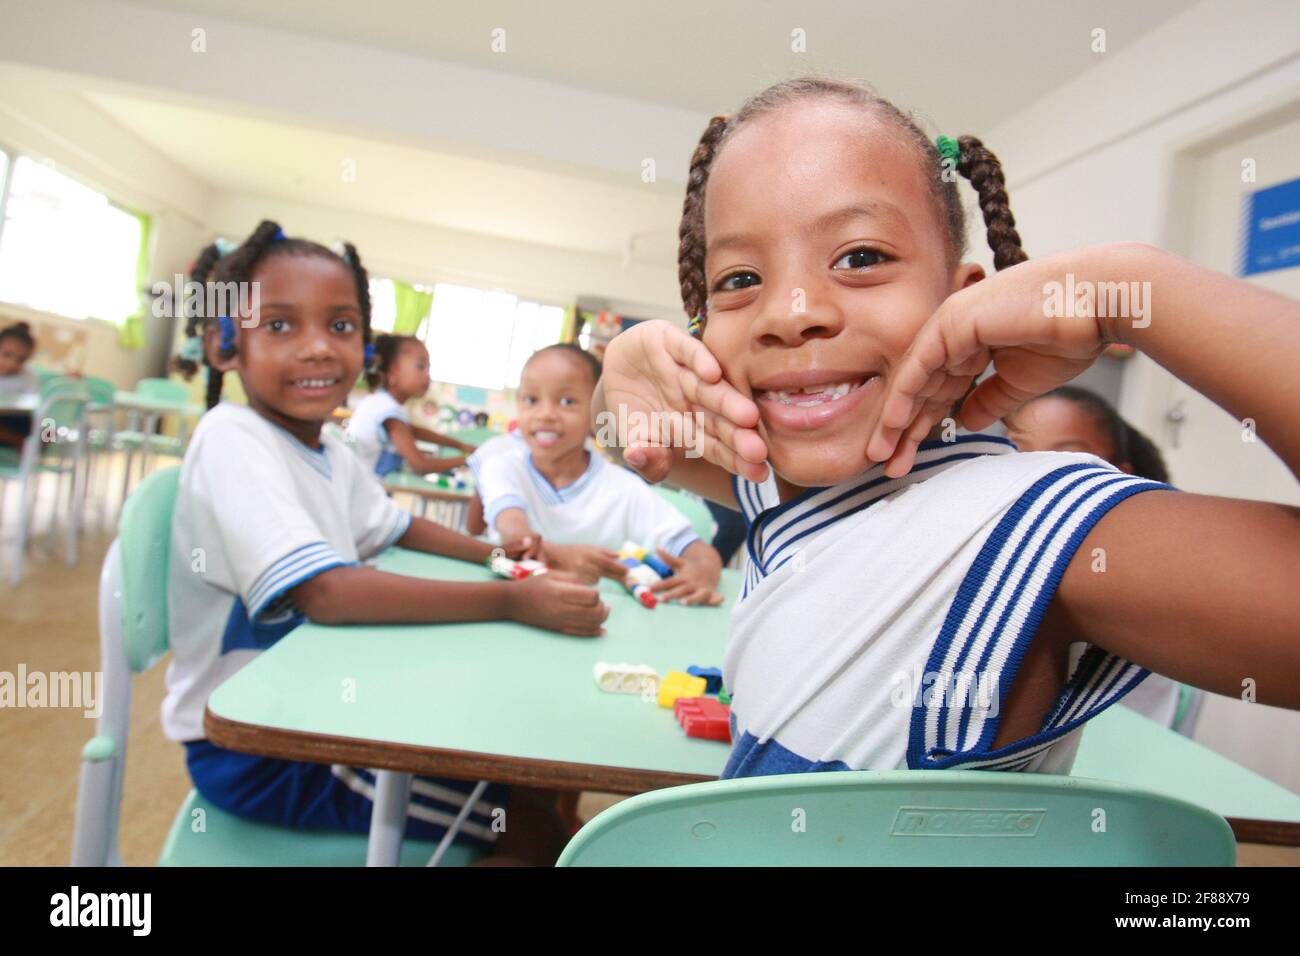 salvador, bahia / brazil - may19, 2016: children are seen in a classroom at the Tereza Mata Pires Municipal Center, in the Alto do Cabrito neighborhoo Stock Photo